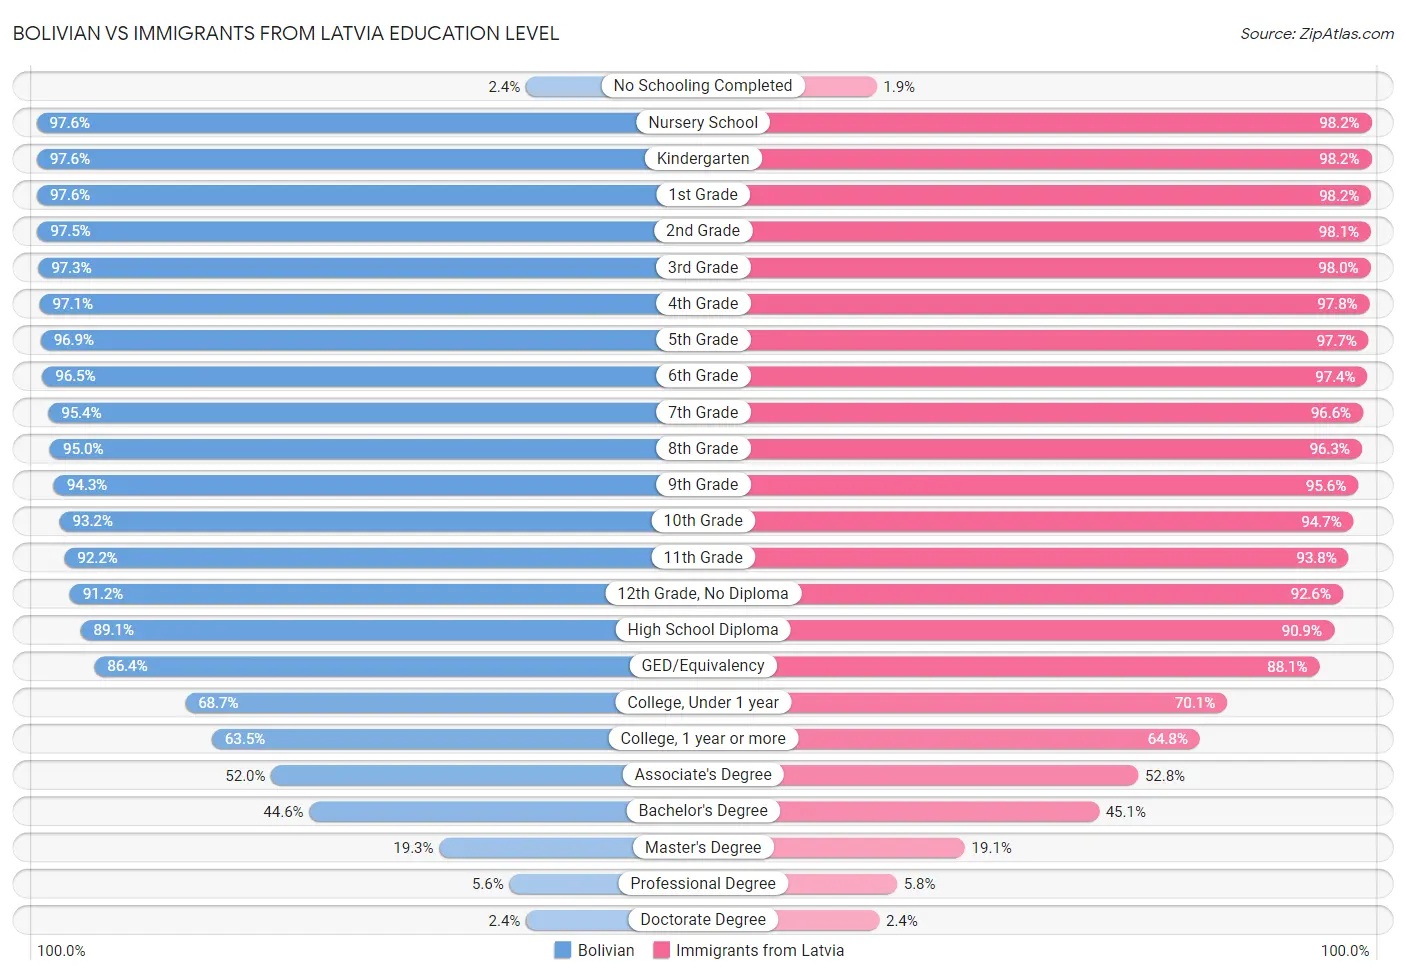 Bolivian vs Immigrants from Latvia Education Level